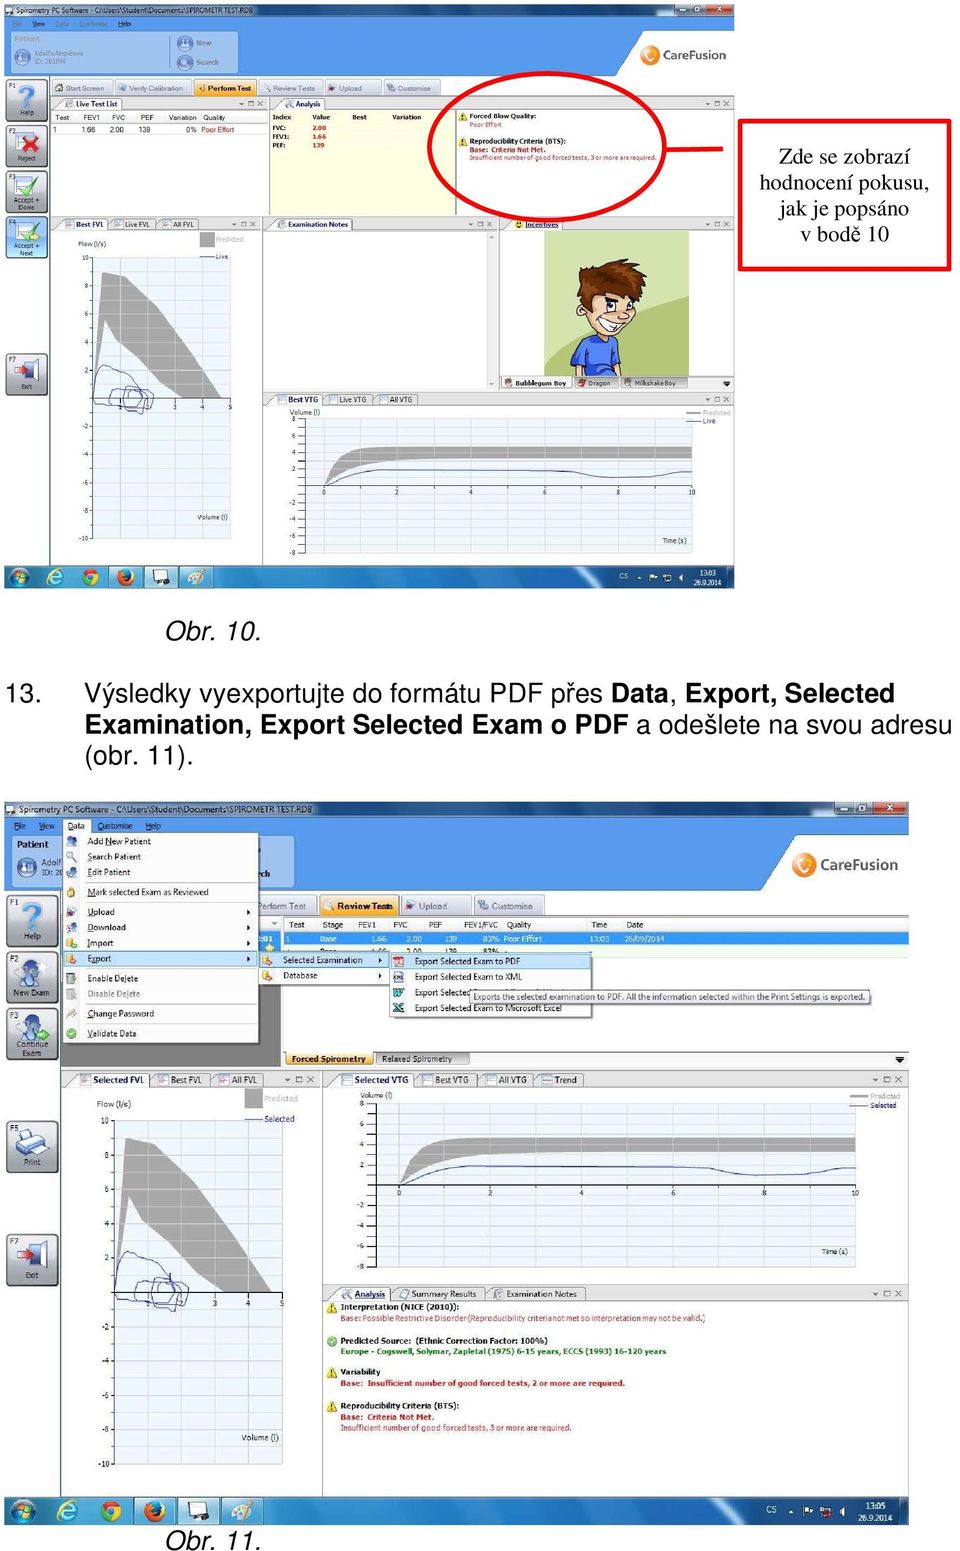 Výsledky vyexportujte do formátu PDF přes Data, Export,